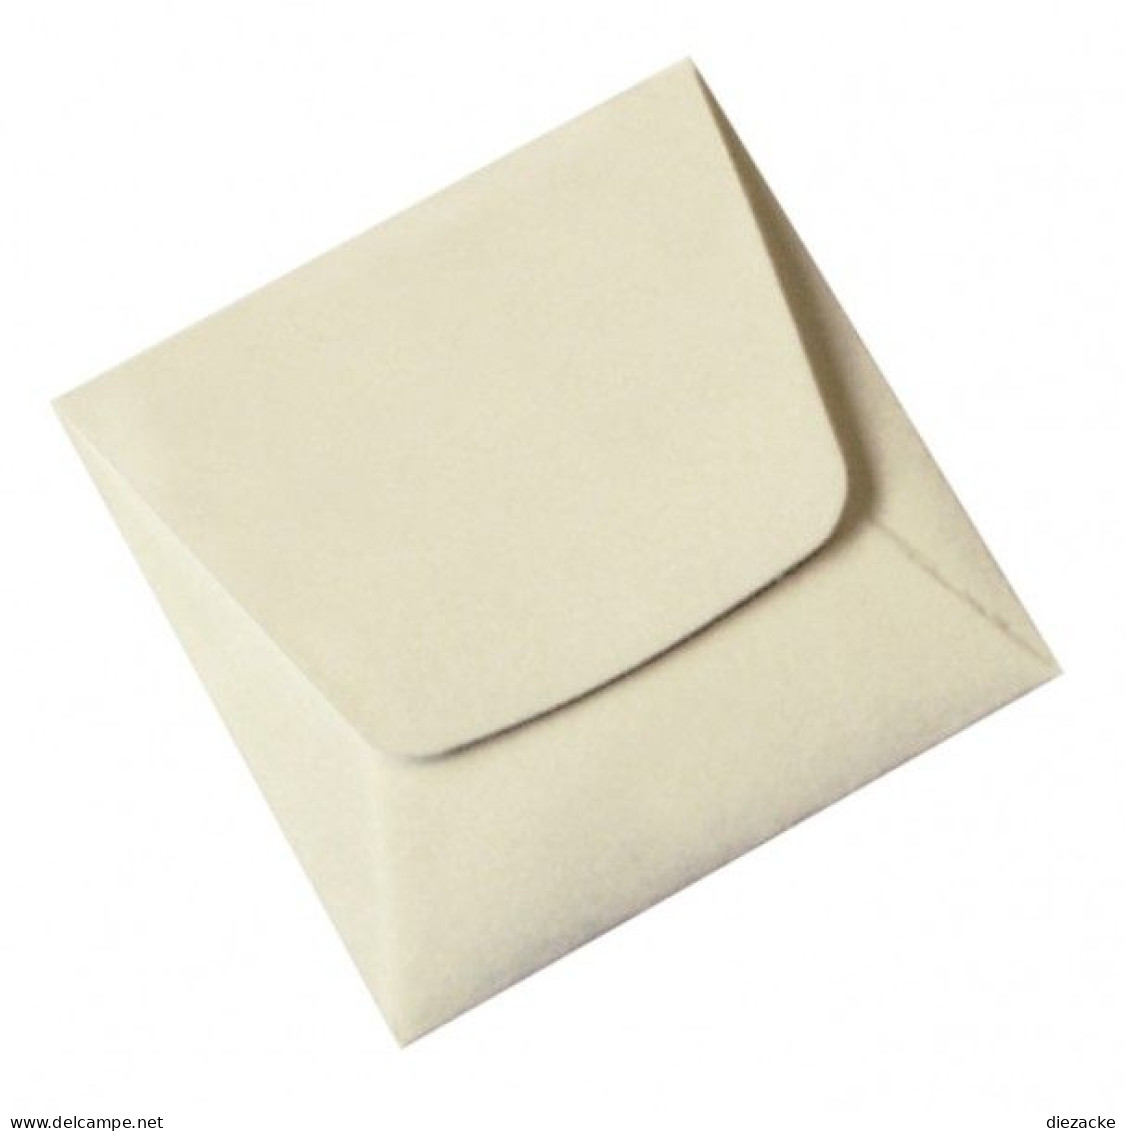 Lindner Münz-Taschen Aus Weißem Papier, 70 X 70 Mm, 8473 (100er Packung) Neu - Materiale